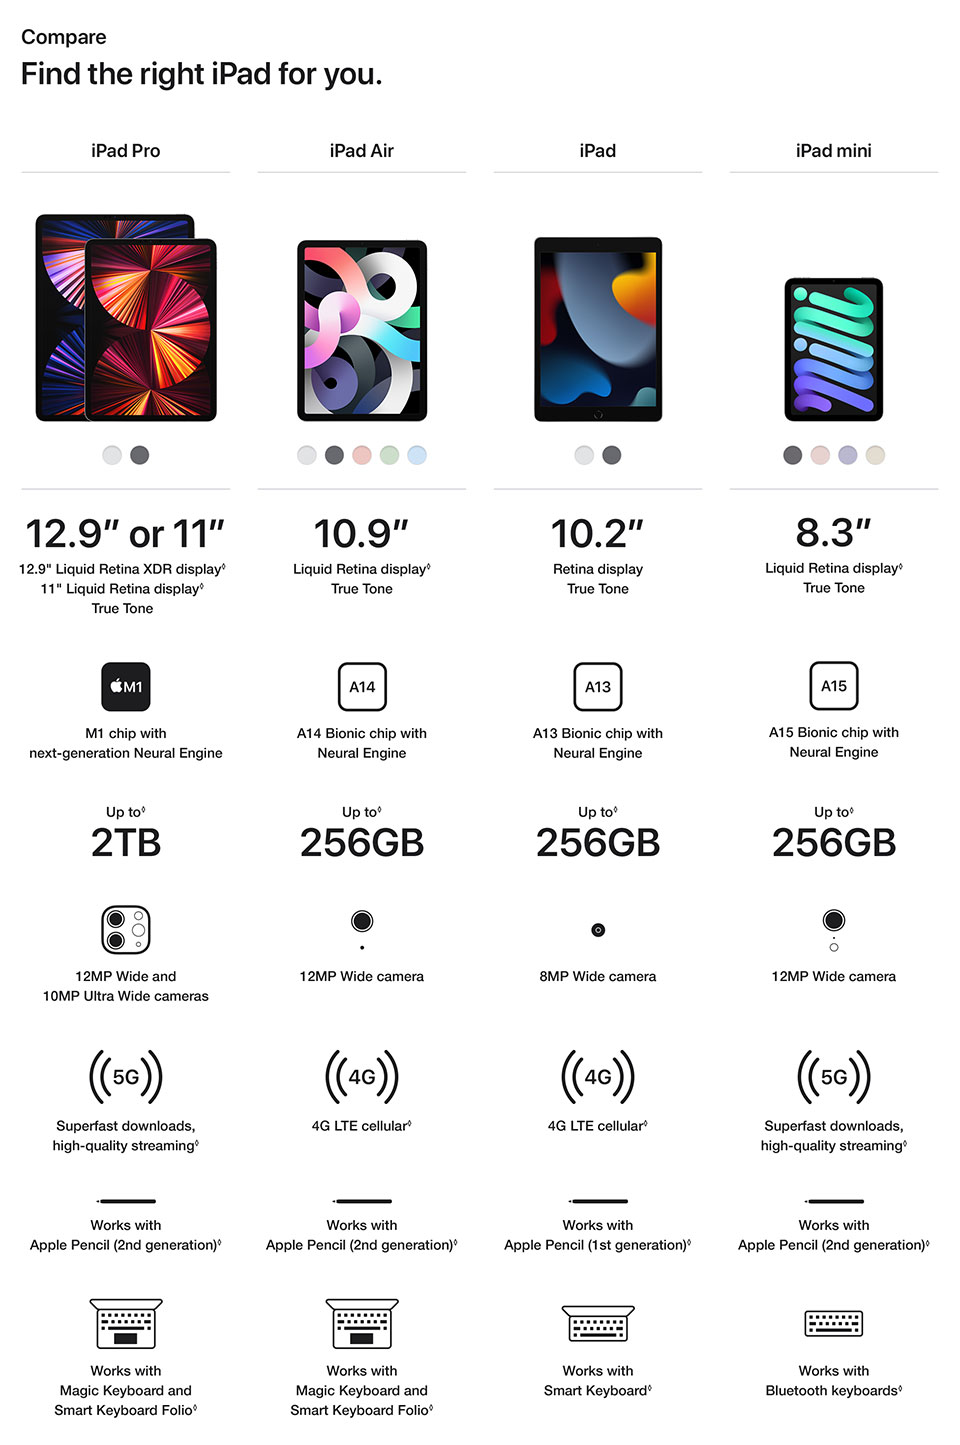 Compare iPad models